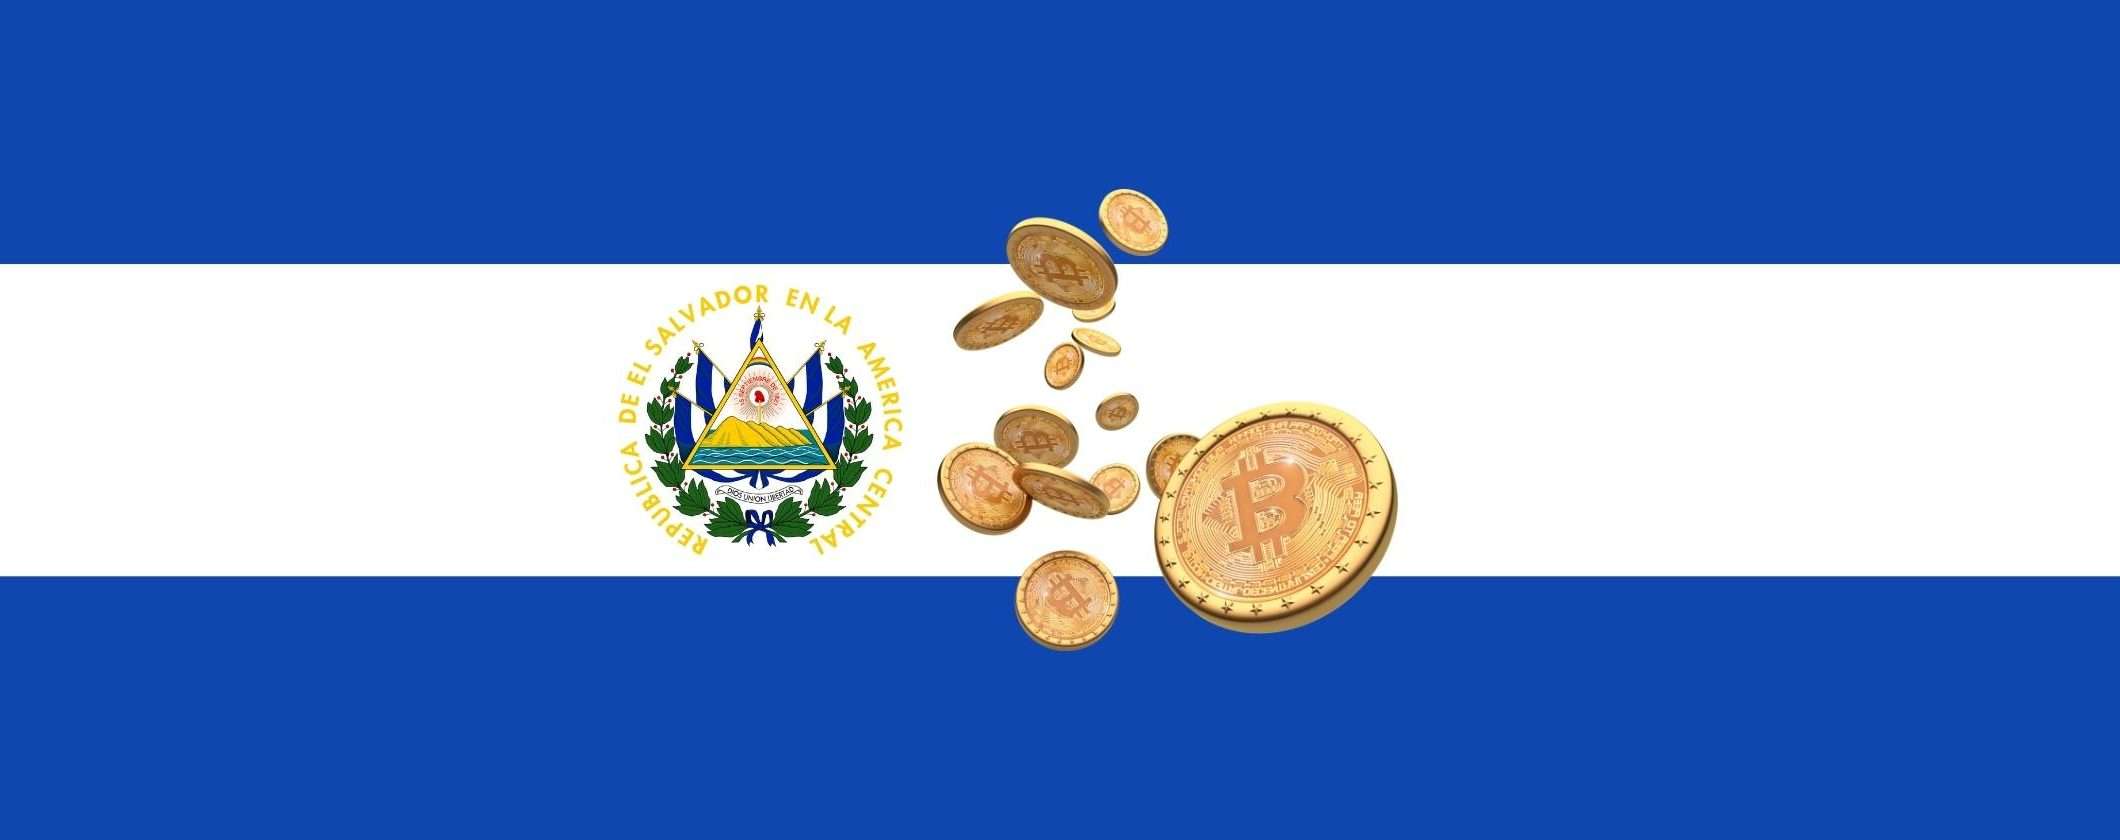 El Salvador non emette le obbligazioni Bitcoin come promesso